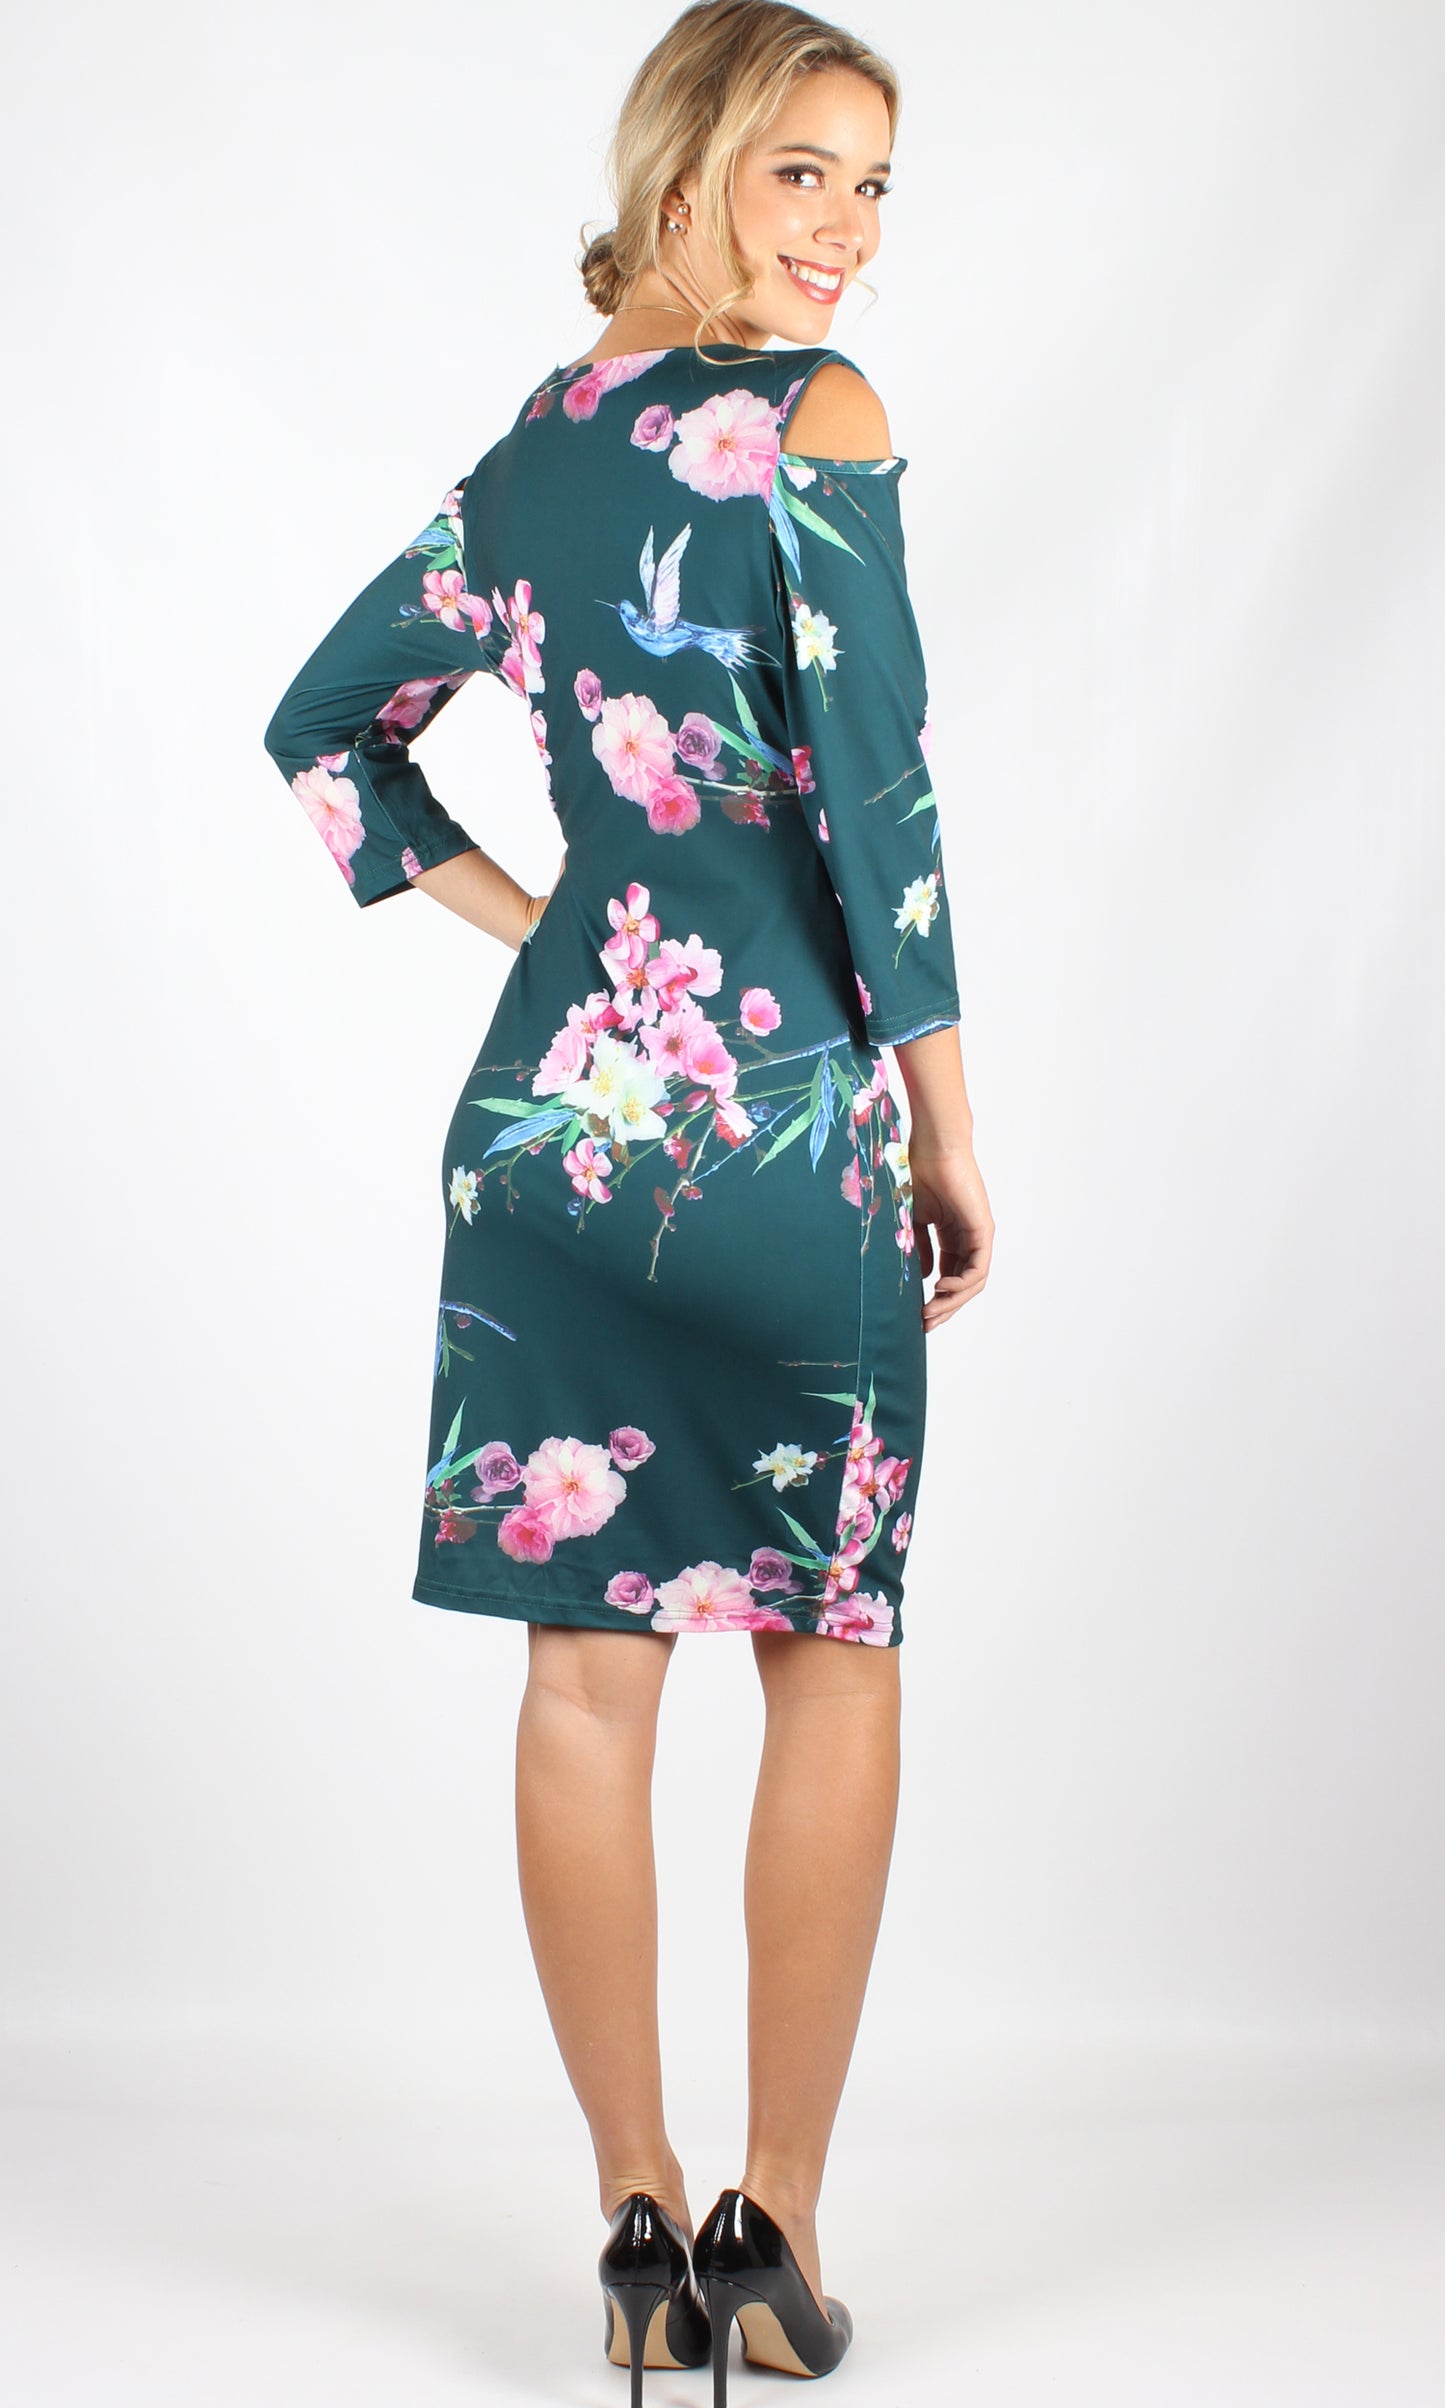 VS1114-8TB Cold Shoulder Green Floral Dress (Pack)